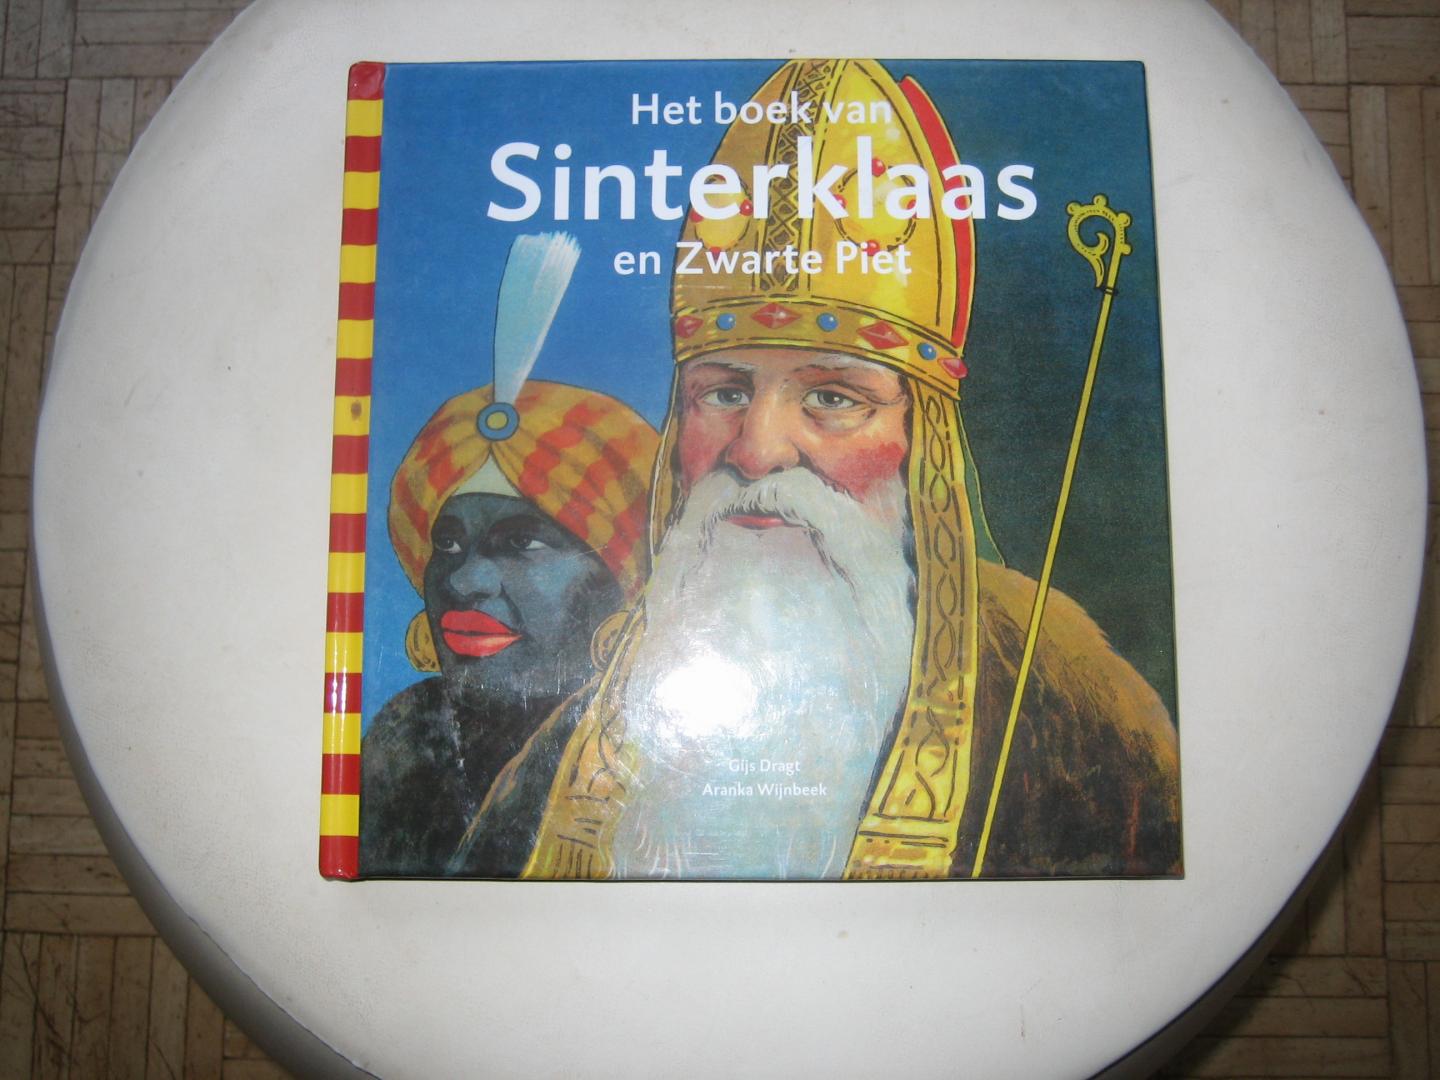 Gijs Dragt & Aranka Wijnbeek - Het Boek van Sinterklaas en Zwarte Piet